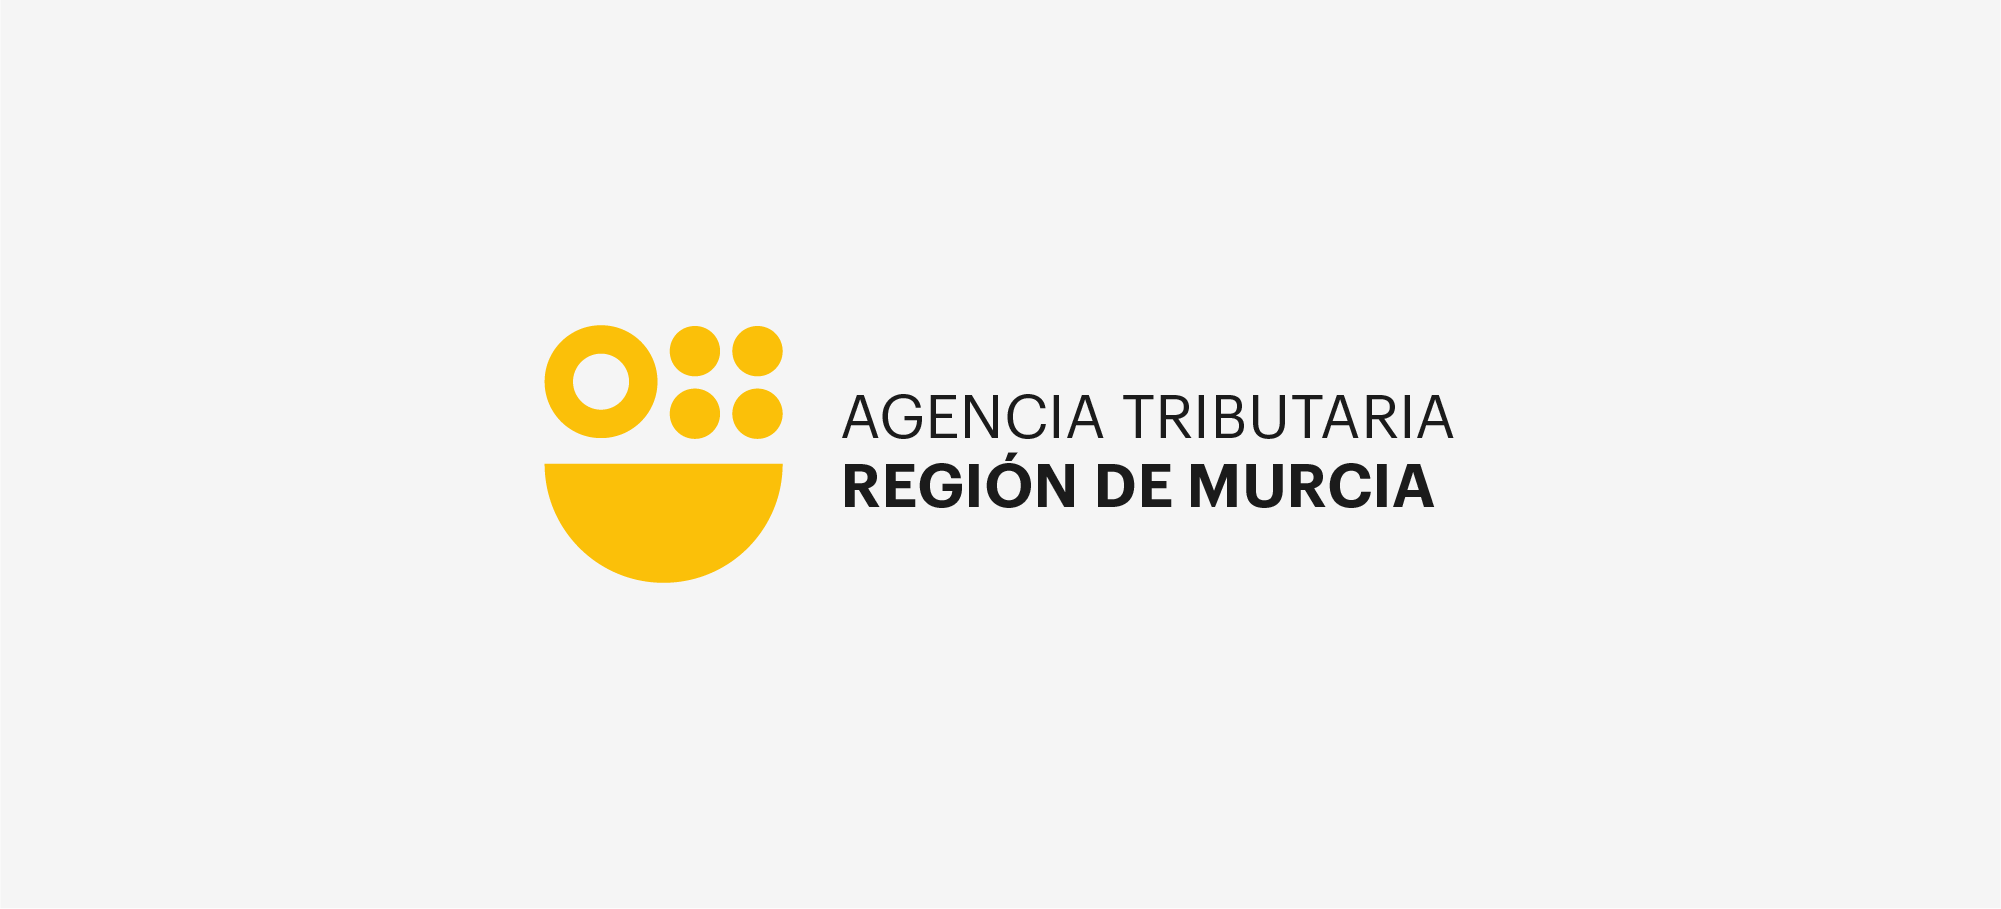 AGENCIA TRIBUTARIA REGIÓN DE MURCIA